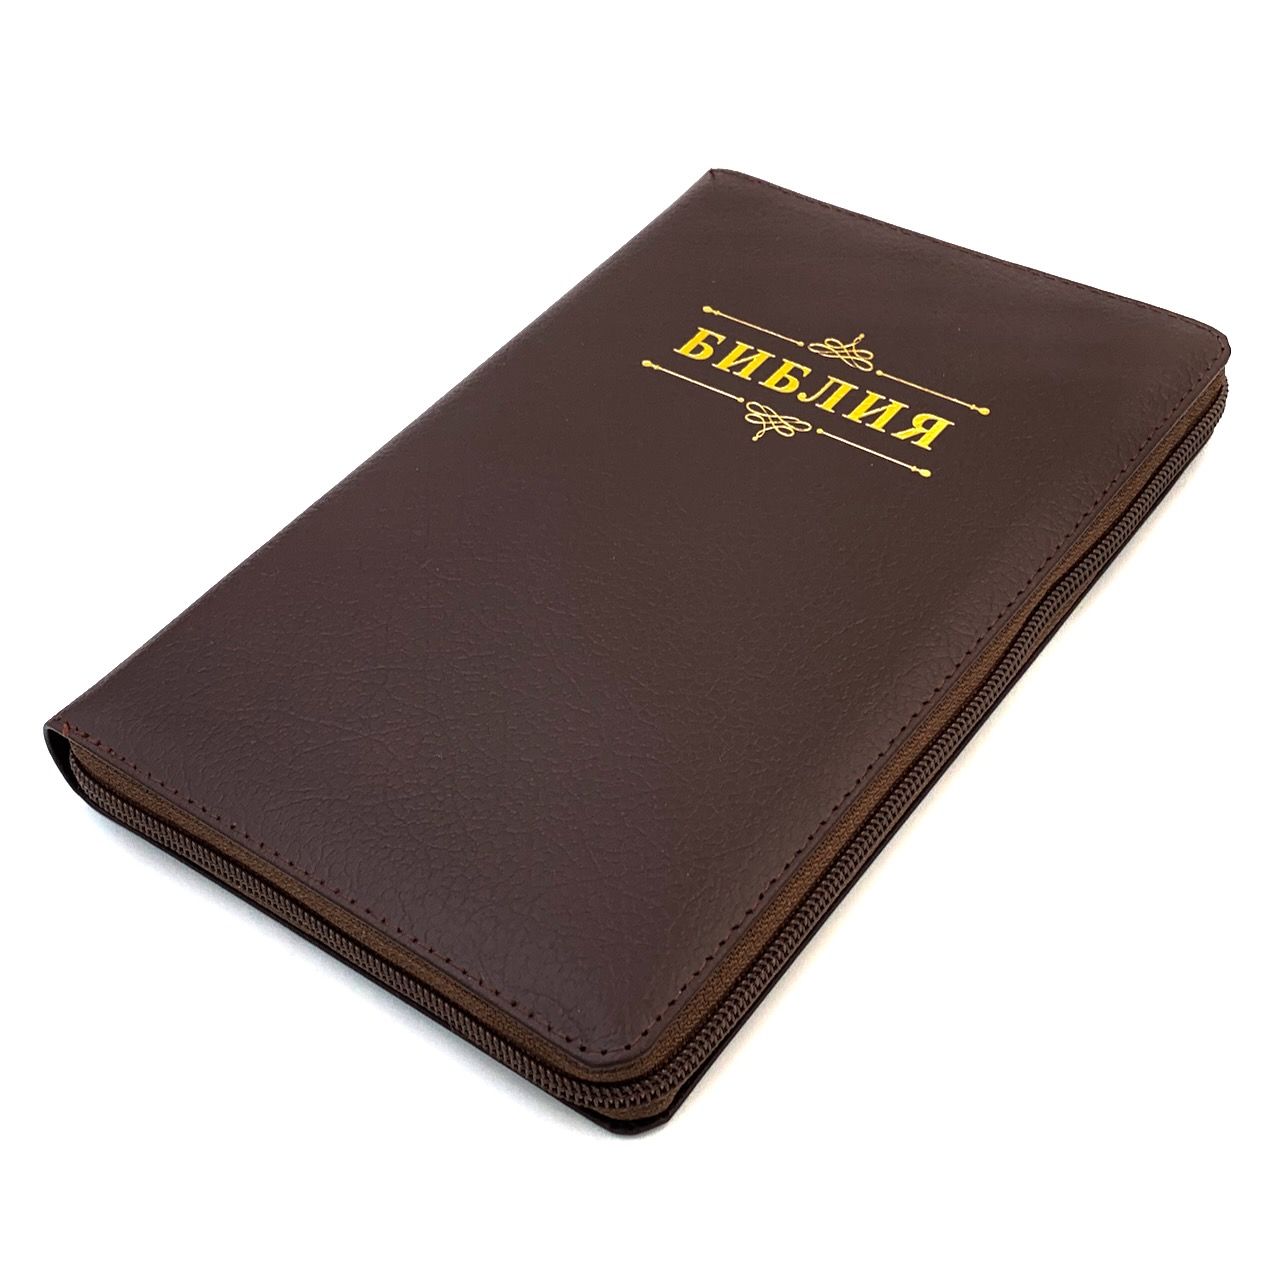 Библия 055zti код 23055-28 надпись "Библия с вензелем", кожаный переплет на молнии с индексами, цвет коричневый пятнистый, средний формат, 143*220 мм